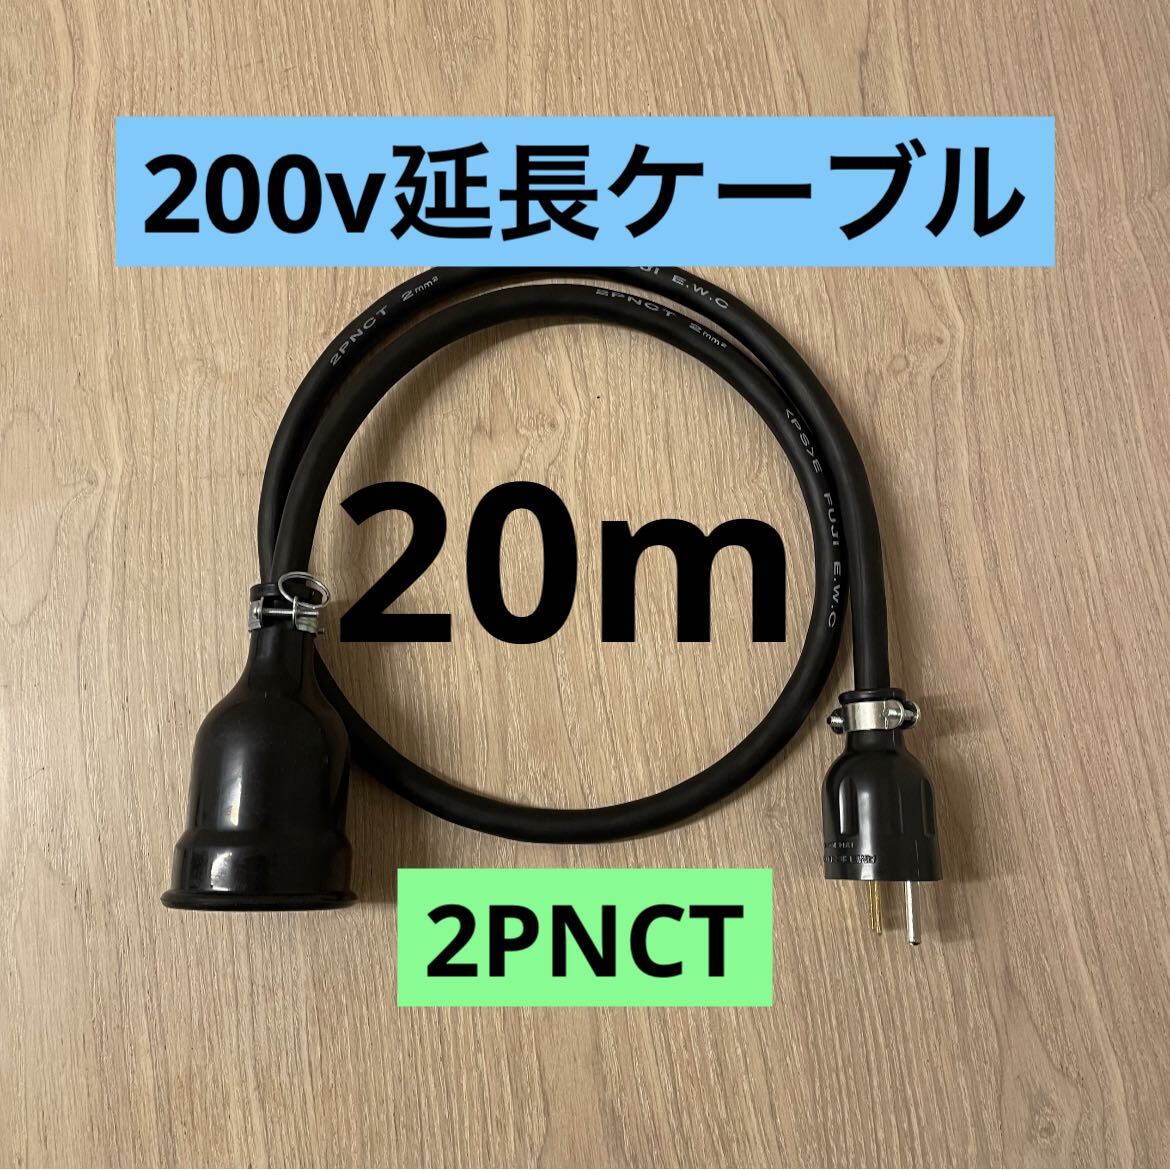 ★ 電気自動車コンセント★ 200V 充電器延長ケーブル20m 2PNCTコード_画像1